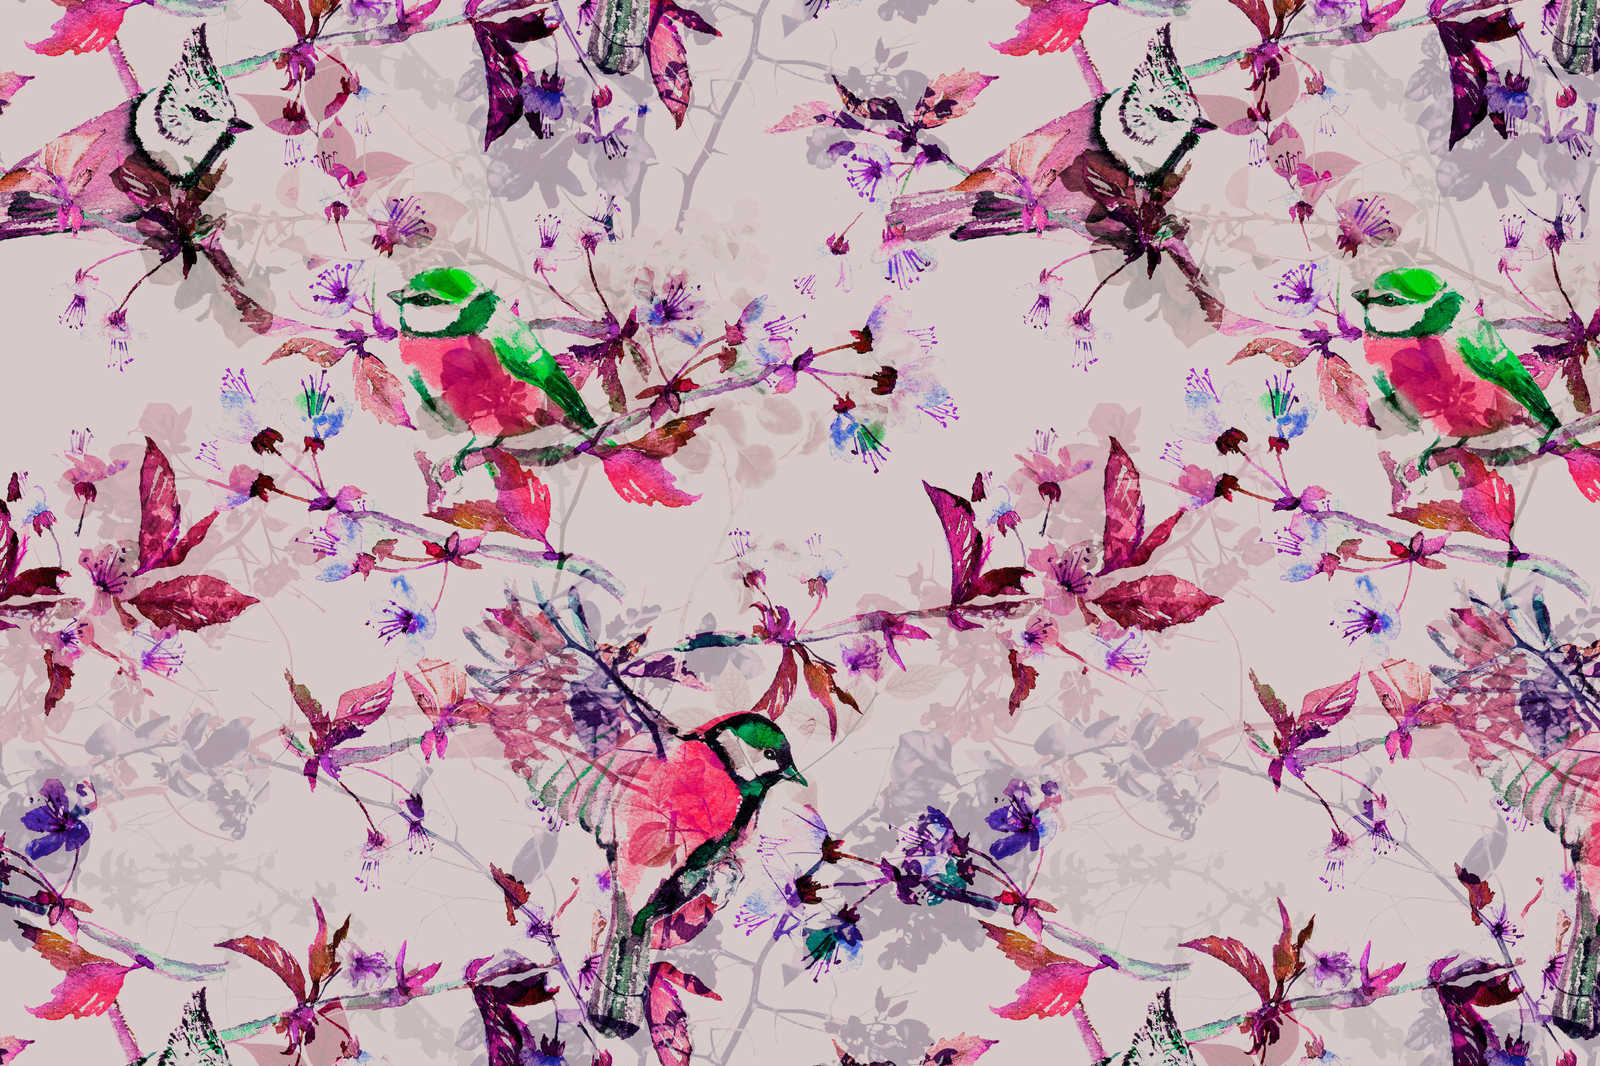             Uccelli Pittura su tela in stile collage | rosa, blu - 0,90 m x 0,60 m
        